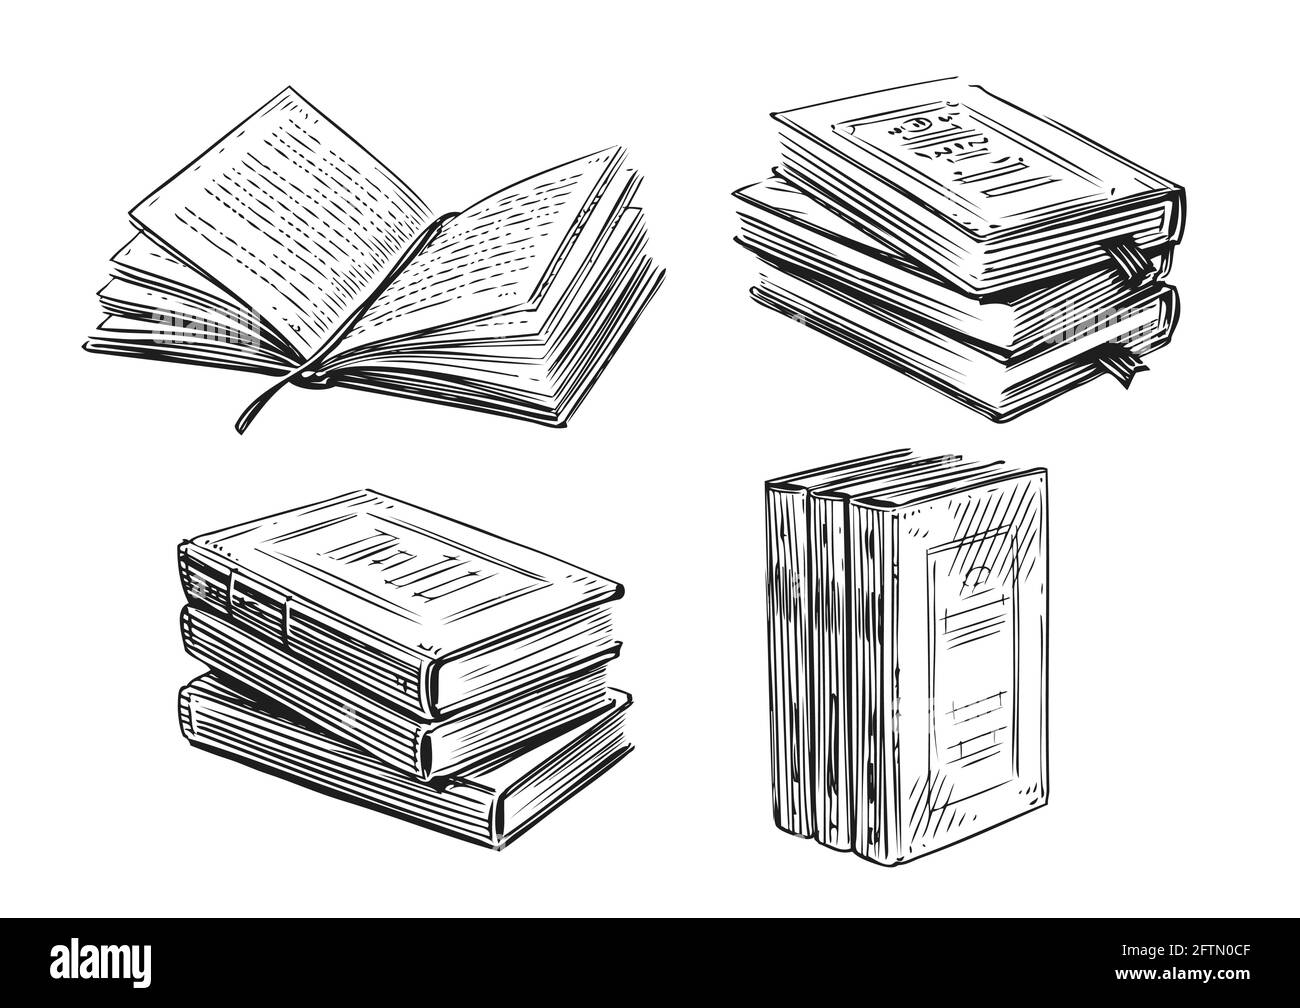 Schizzi di libri. Letteratura, concetto di biblioteca in stile vintage. Elementi di disegno vettoriali disegnati a mano Illustrazione Vettoriale